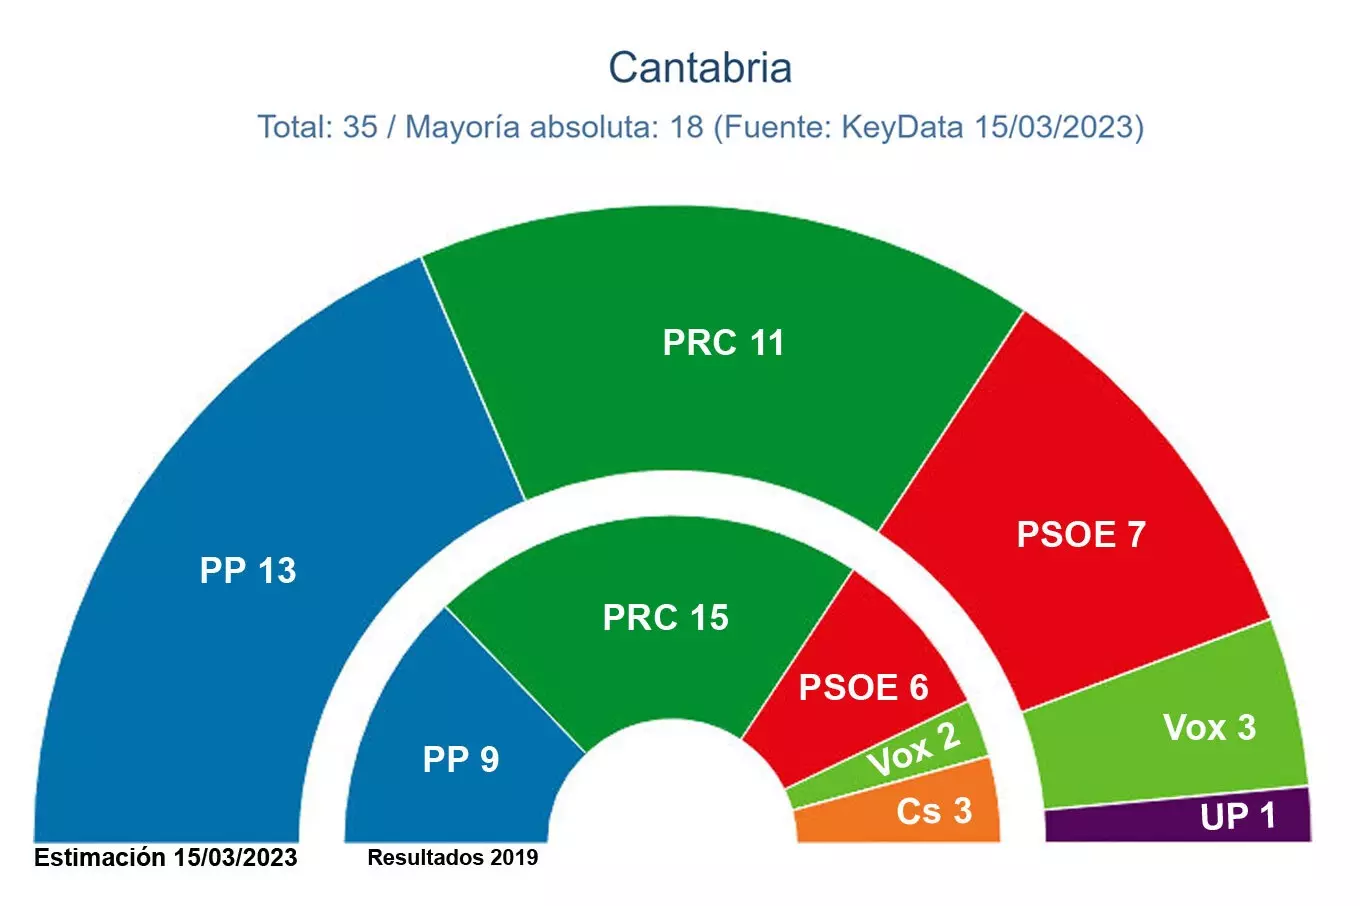 Elecciones autonómicas 2023 cantabria